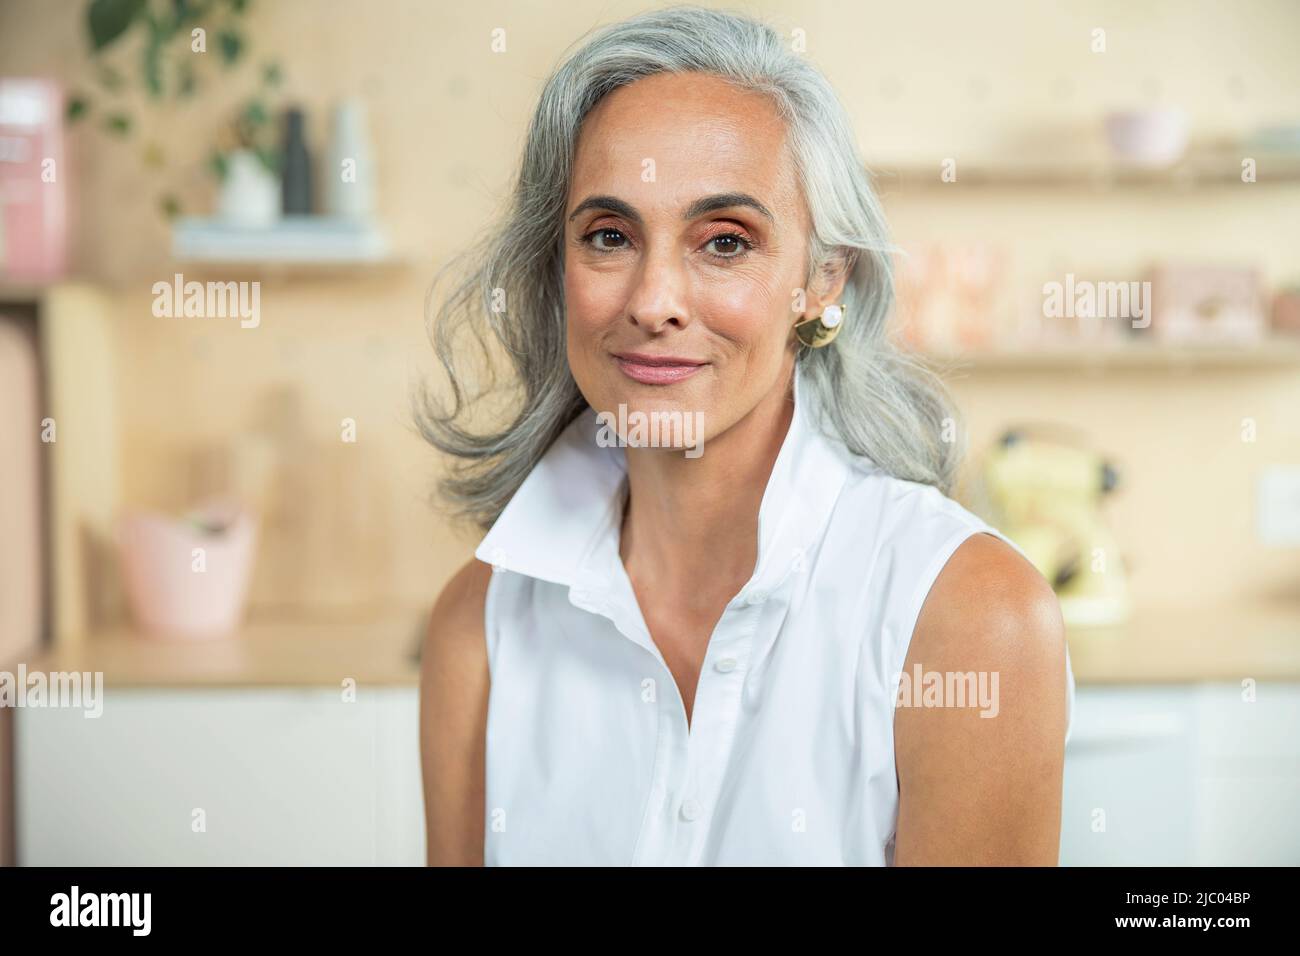 Primer plano retrato de una mujer de mediana edad con pelo gris natural mirando a la cámara con una sonrisa cálida. Foto de stock